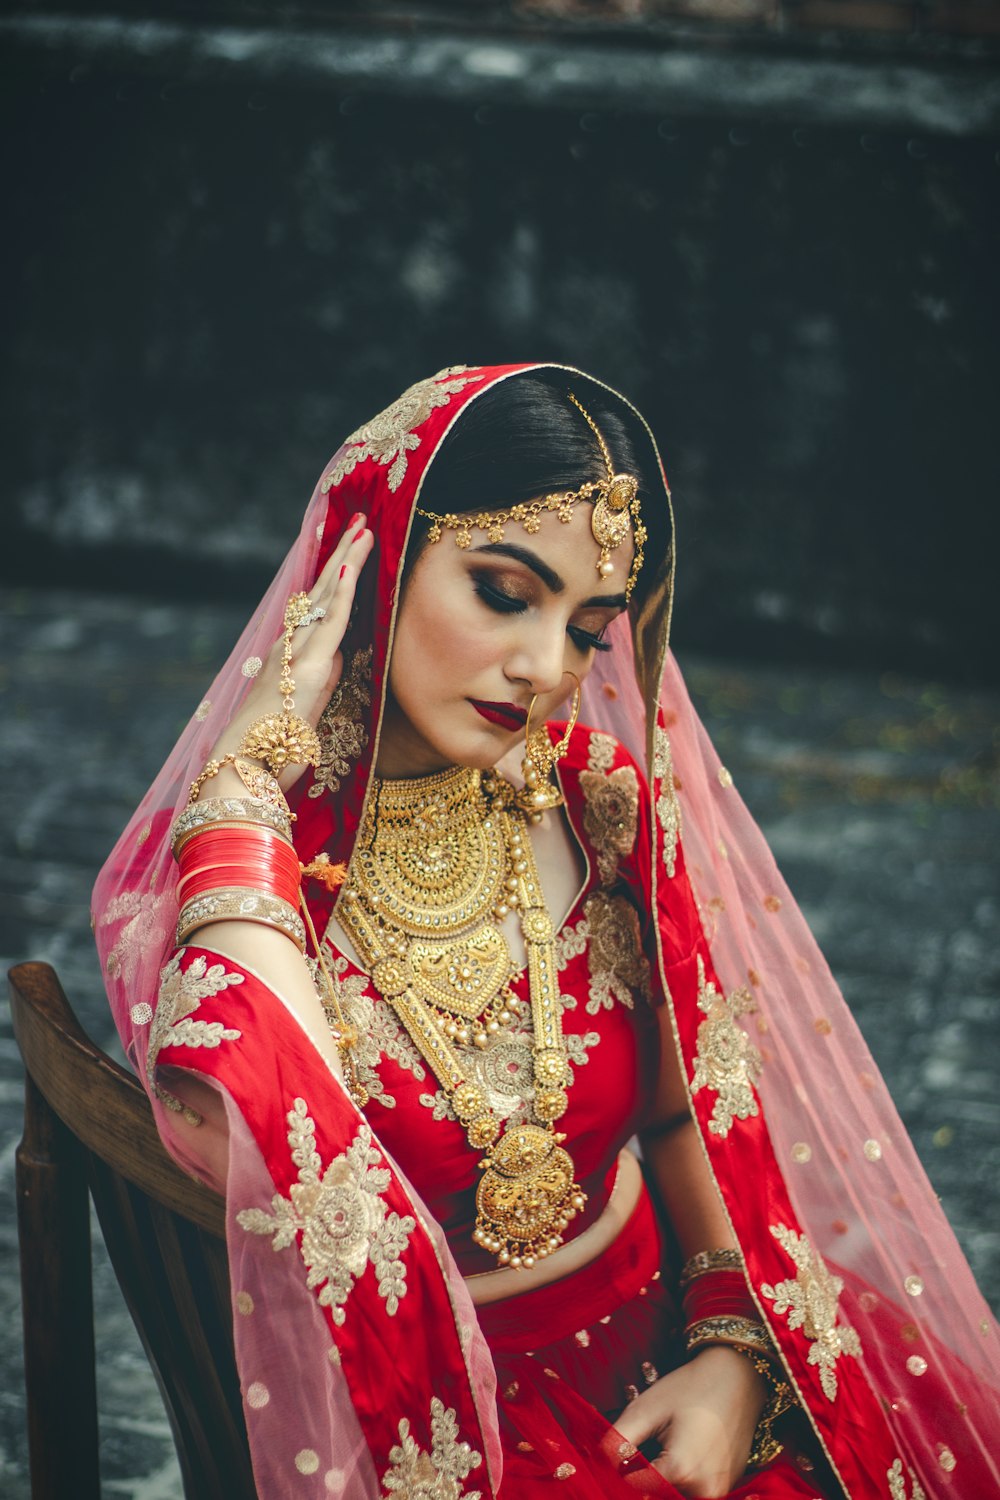 donna che indossa il sari da sposa che guarda verso il basso